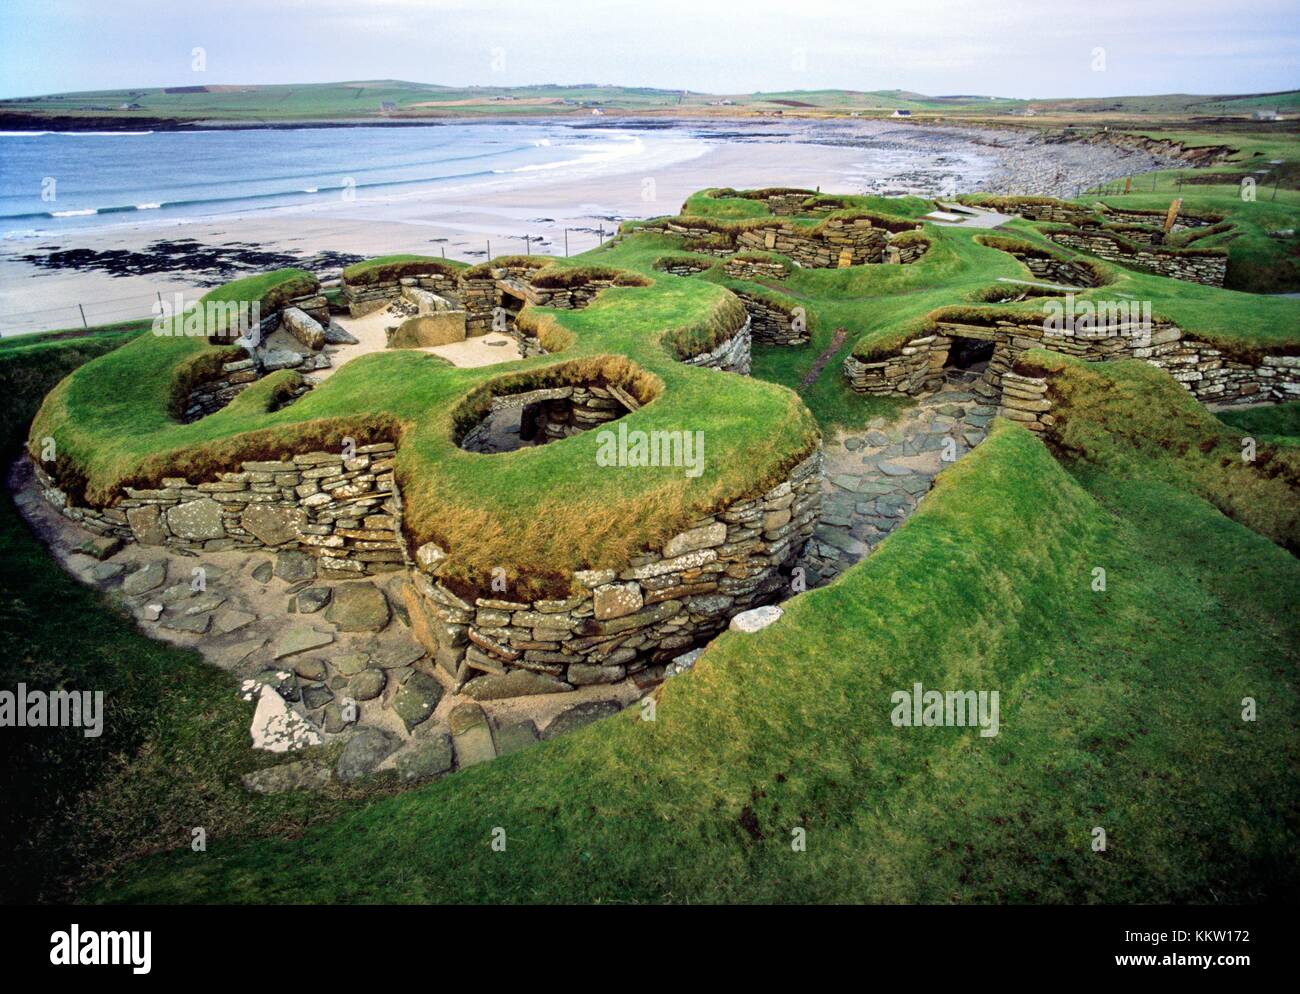 Skara Brae stone age village 3100 BC. Les Orcades, en Écosse. Excavation de dune de sable montrant des maisons et ruelles de liaison Banque D'Images